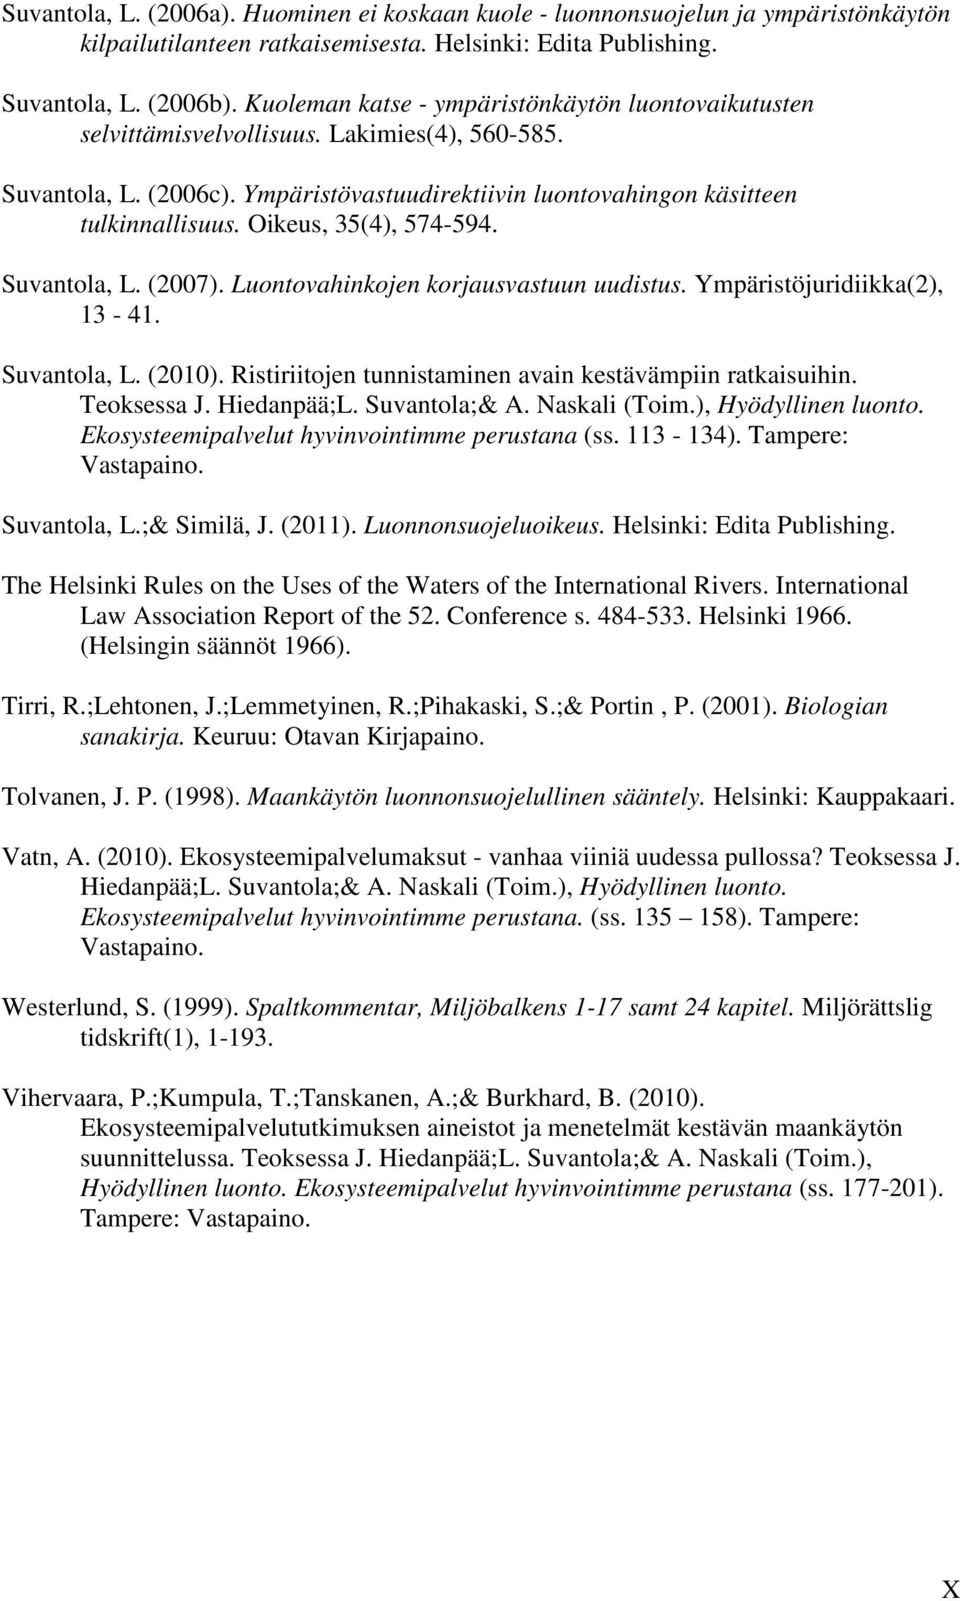 Oikeus, 35(4), 574-594. Suvantola, L. (2007). Luontovahinkojen korjausvastuun uudistus. Ympäristöjuridiikka(2), 13-41. Suvantola, L. (2010).